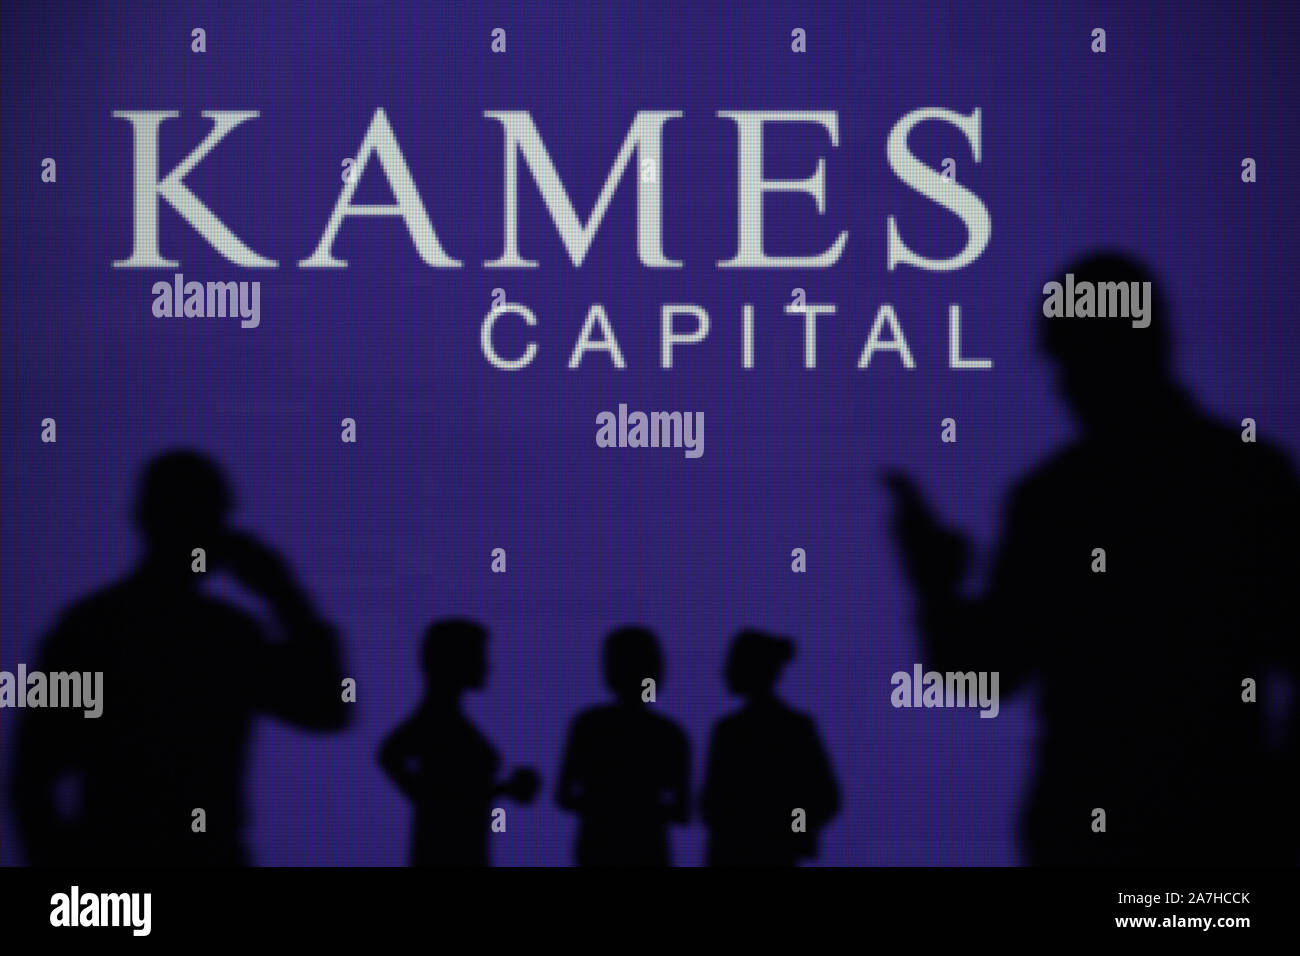 Le capital Kames plc logo est visible sur un écran LED à l'arrière-plan tandis qu'une silhouette personne utilise un smartphone (usage éditorial uniquement) Banque D'Images